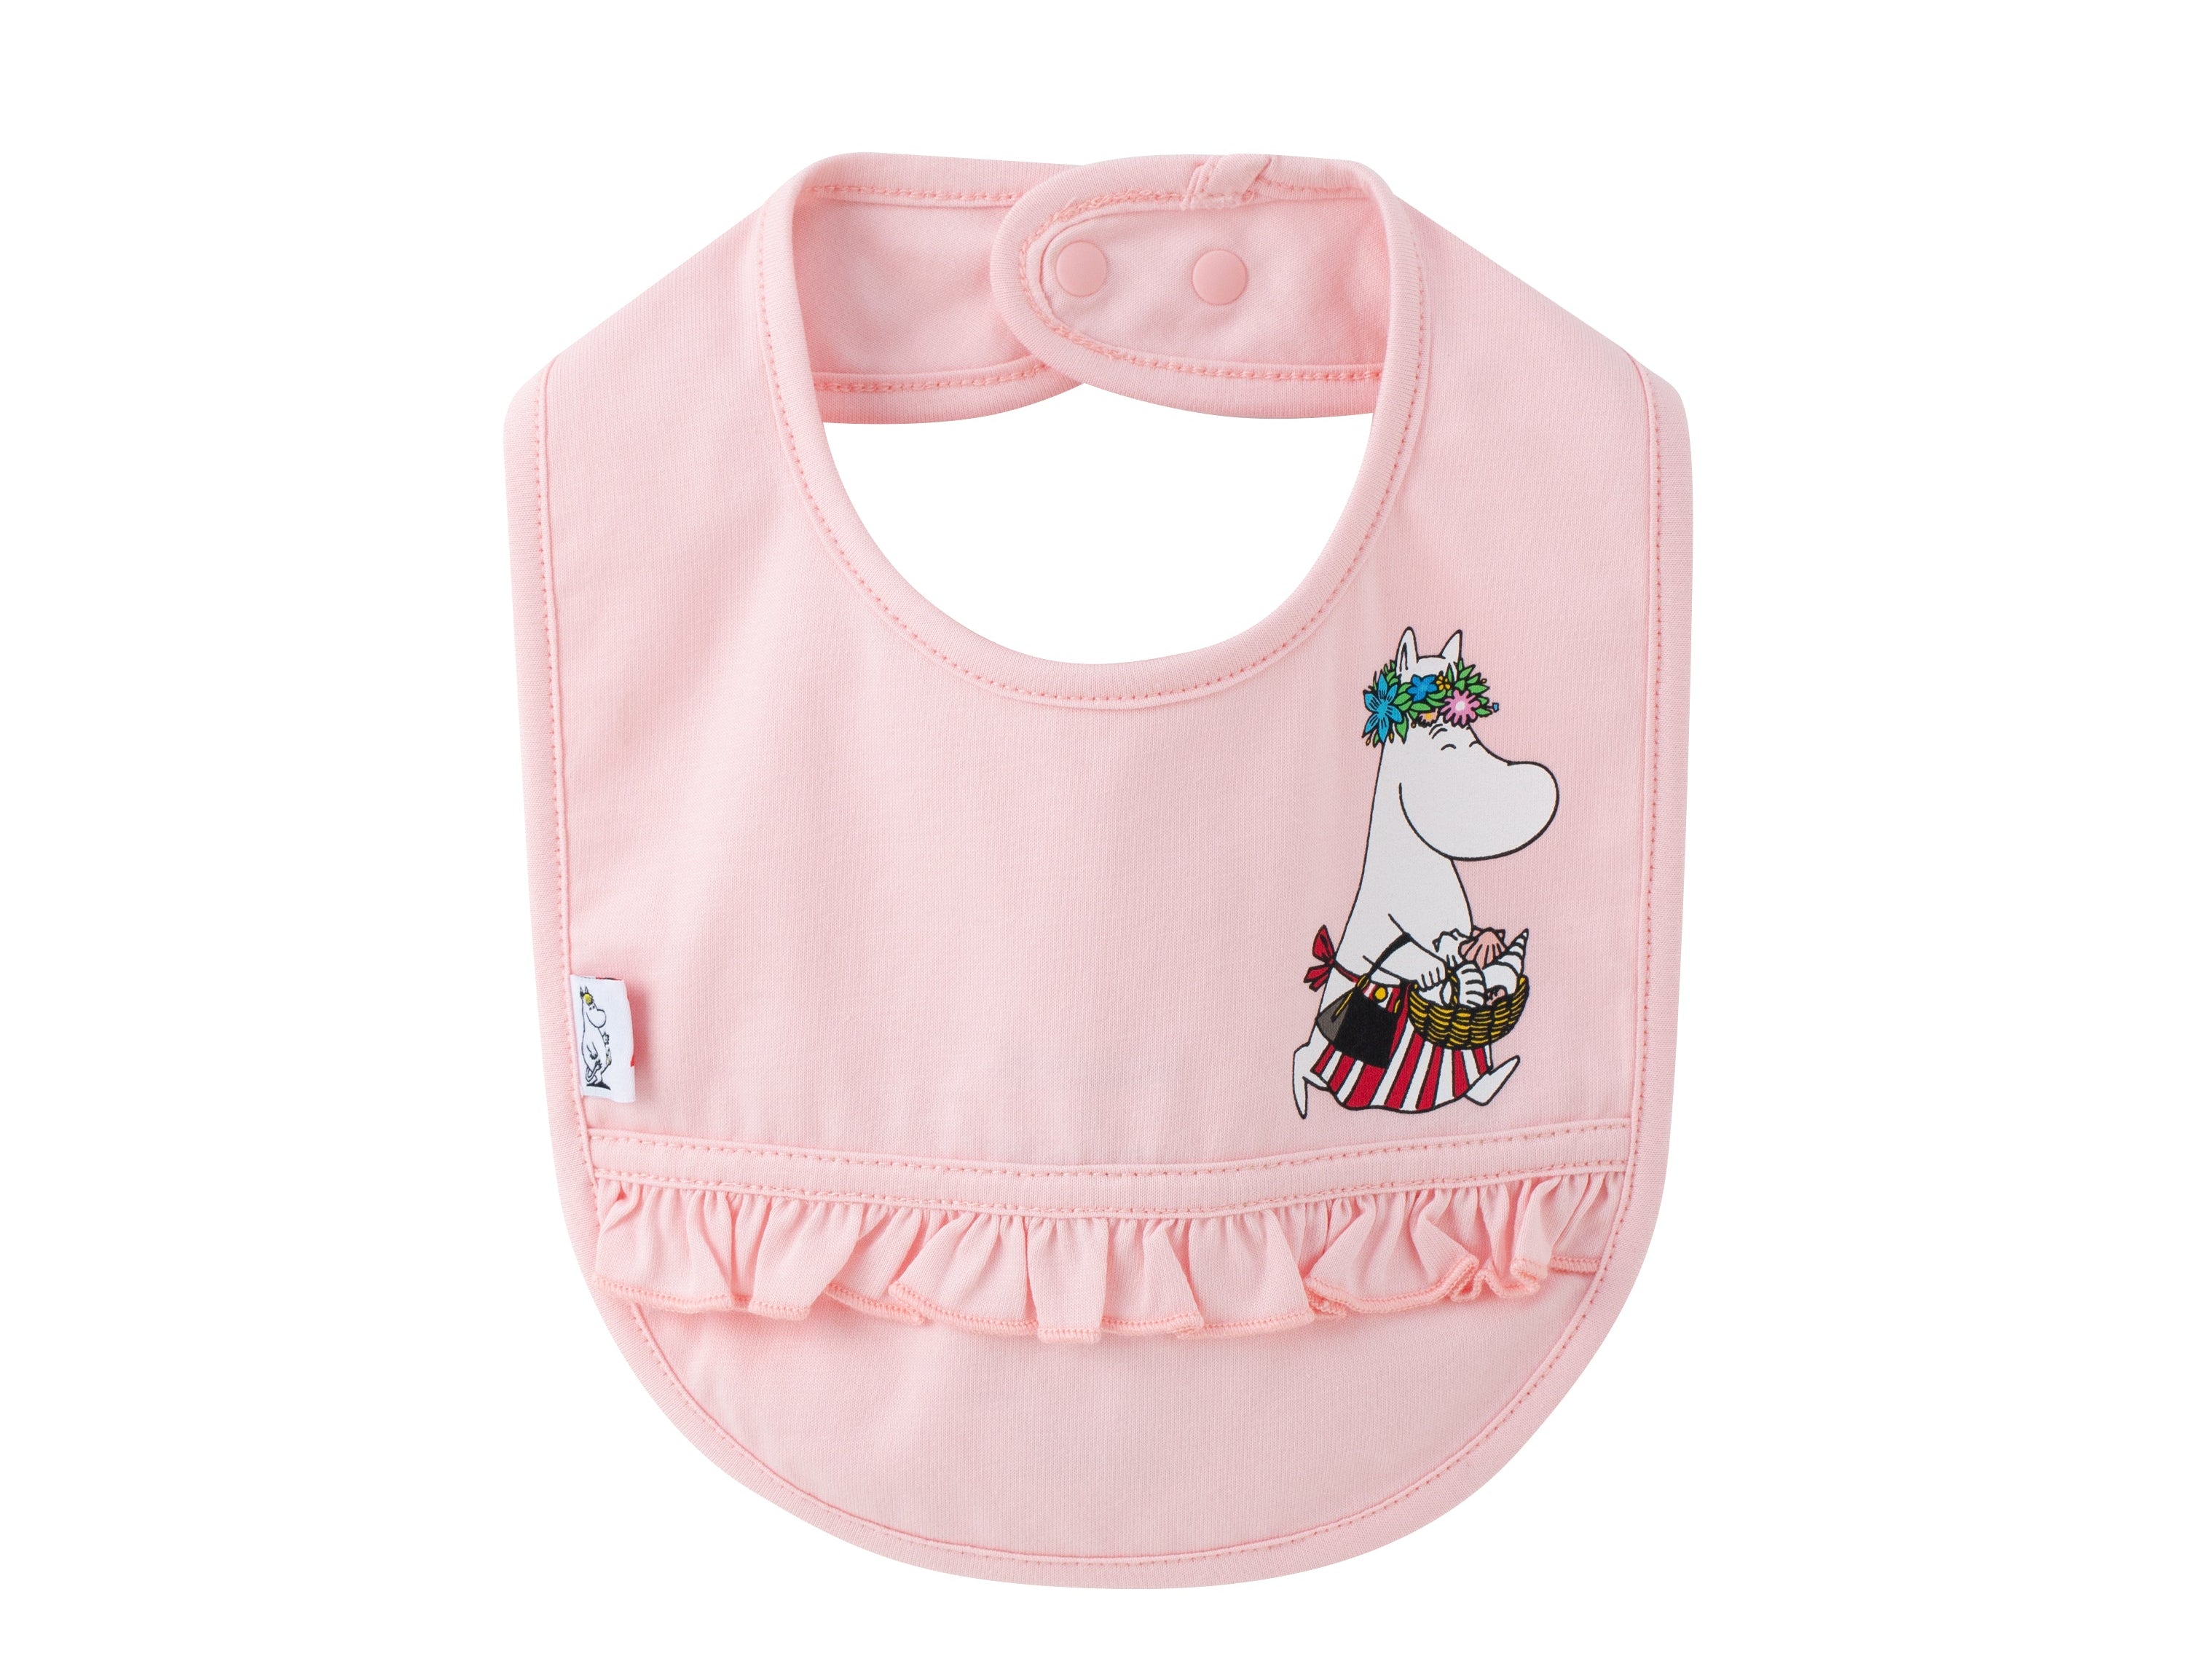 Vauva x Moomin - Baby Girls Ruffle Bibs (Pink)  - Product Image 1